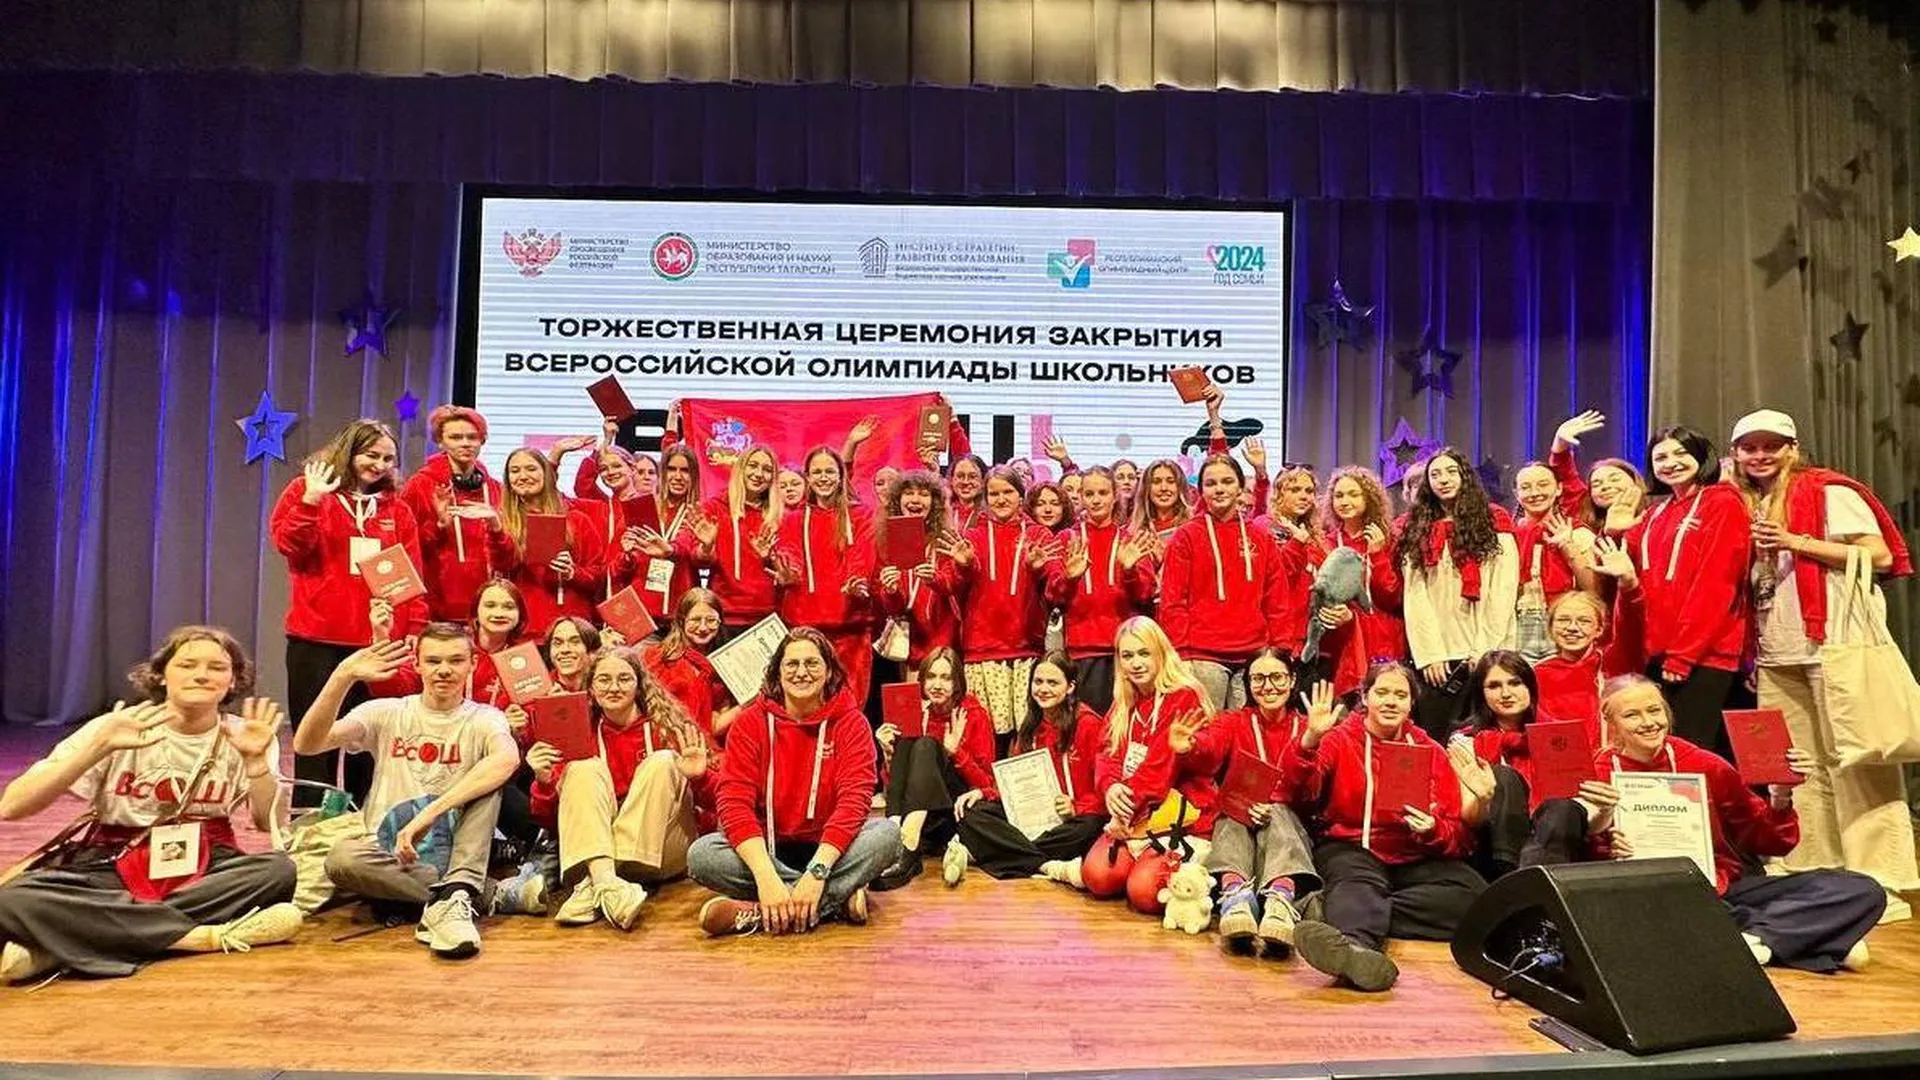 Подмосковные ученики победили на всероссийской школьной олимпиаде